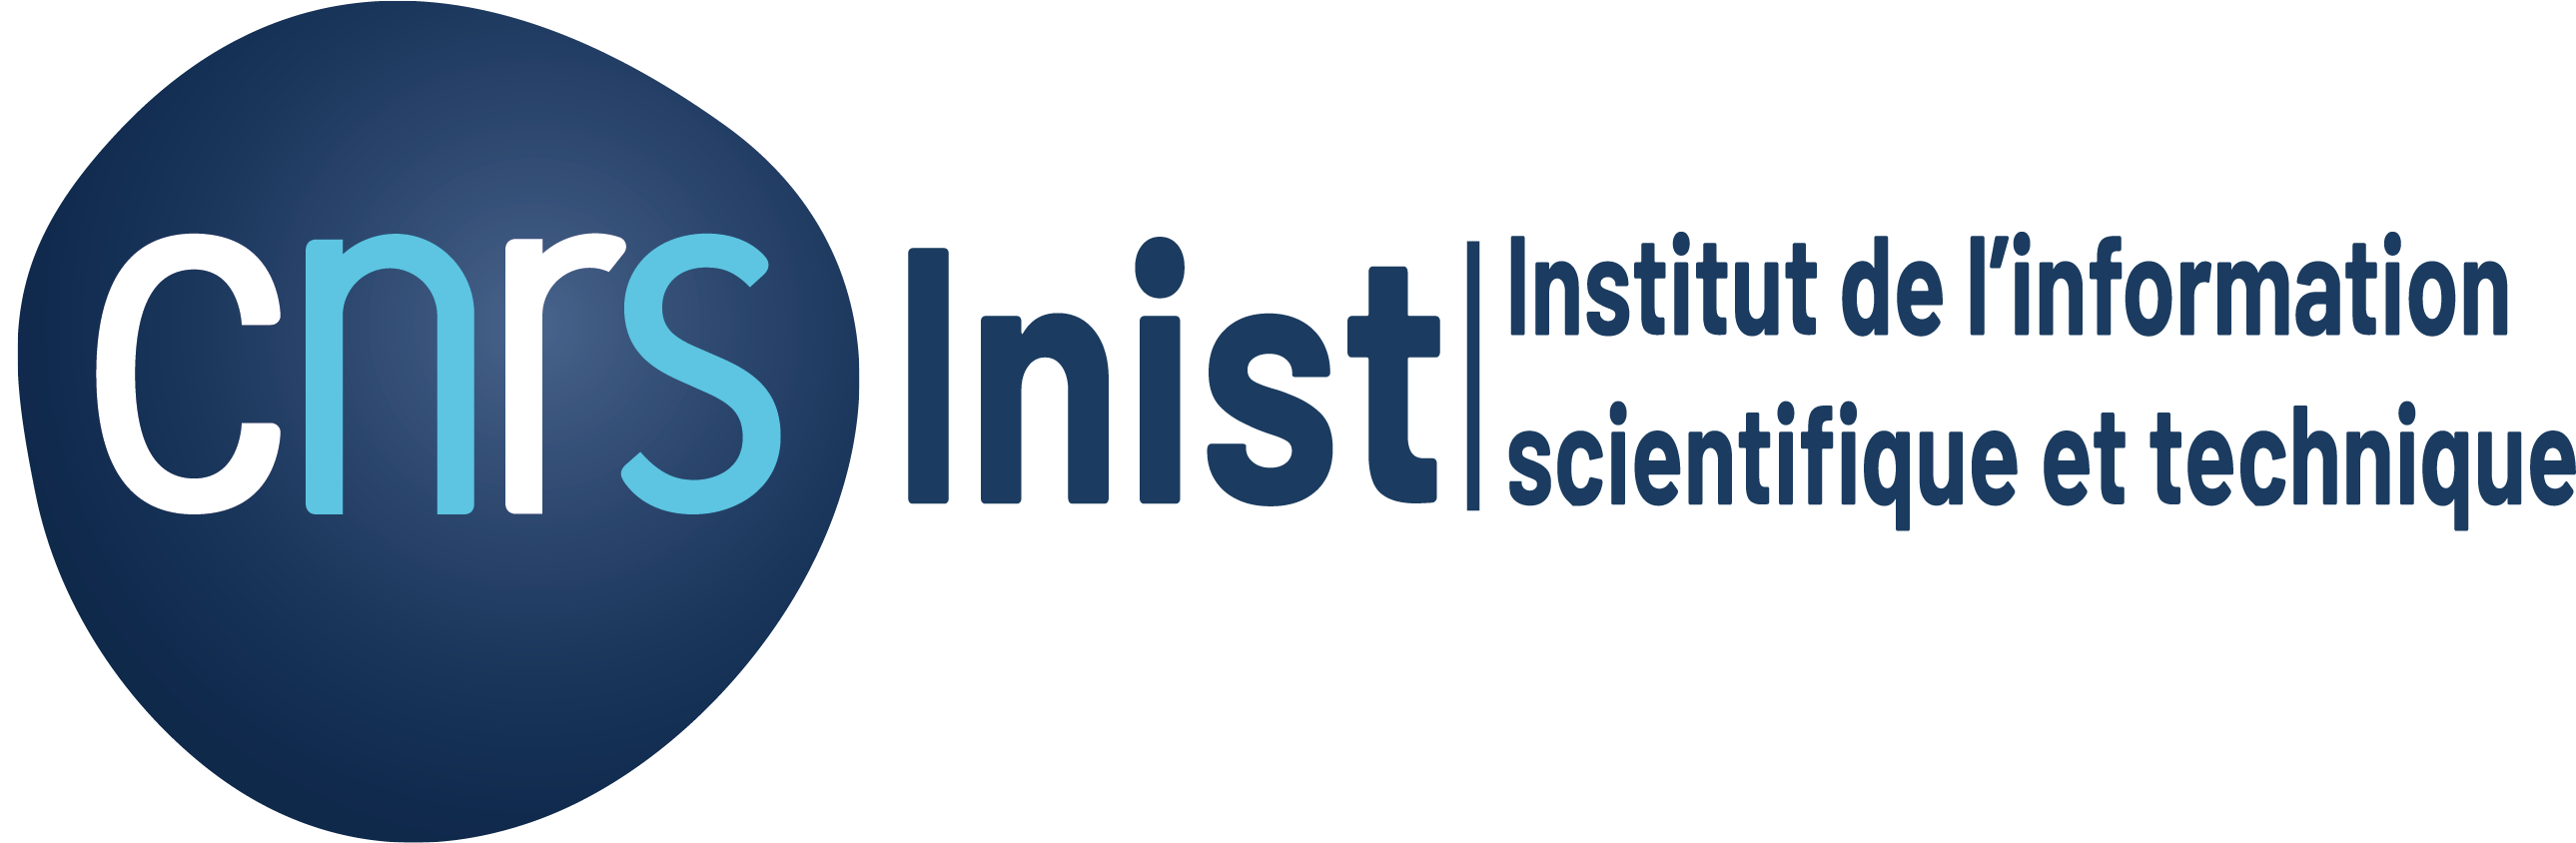 Inist - Institut de l'Information Scientifique et Technique | CNRS